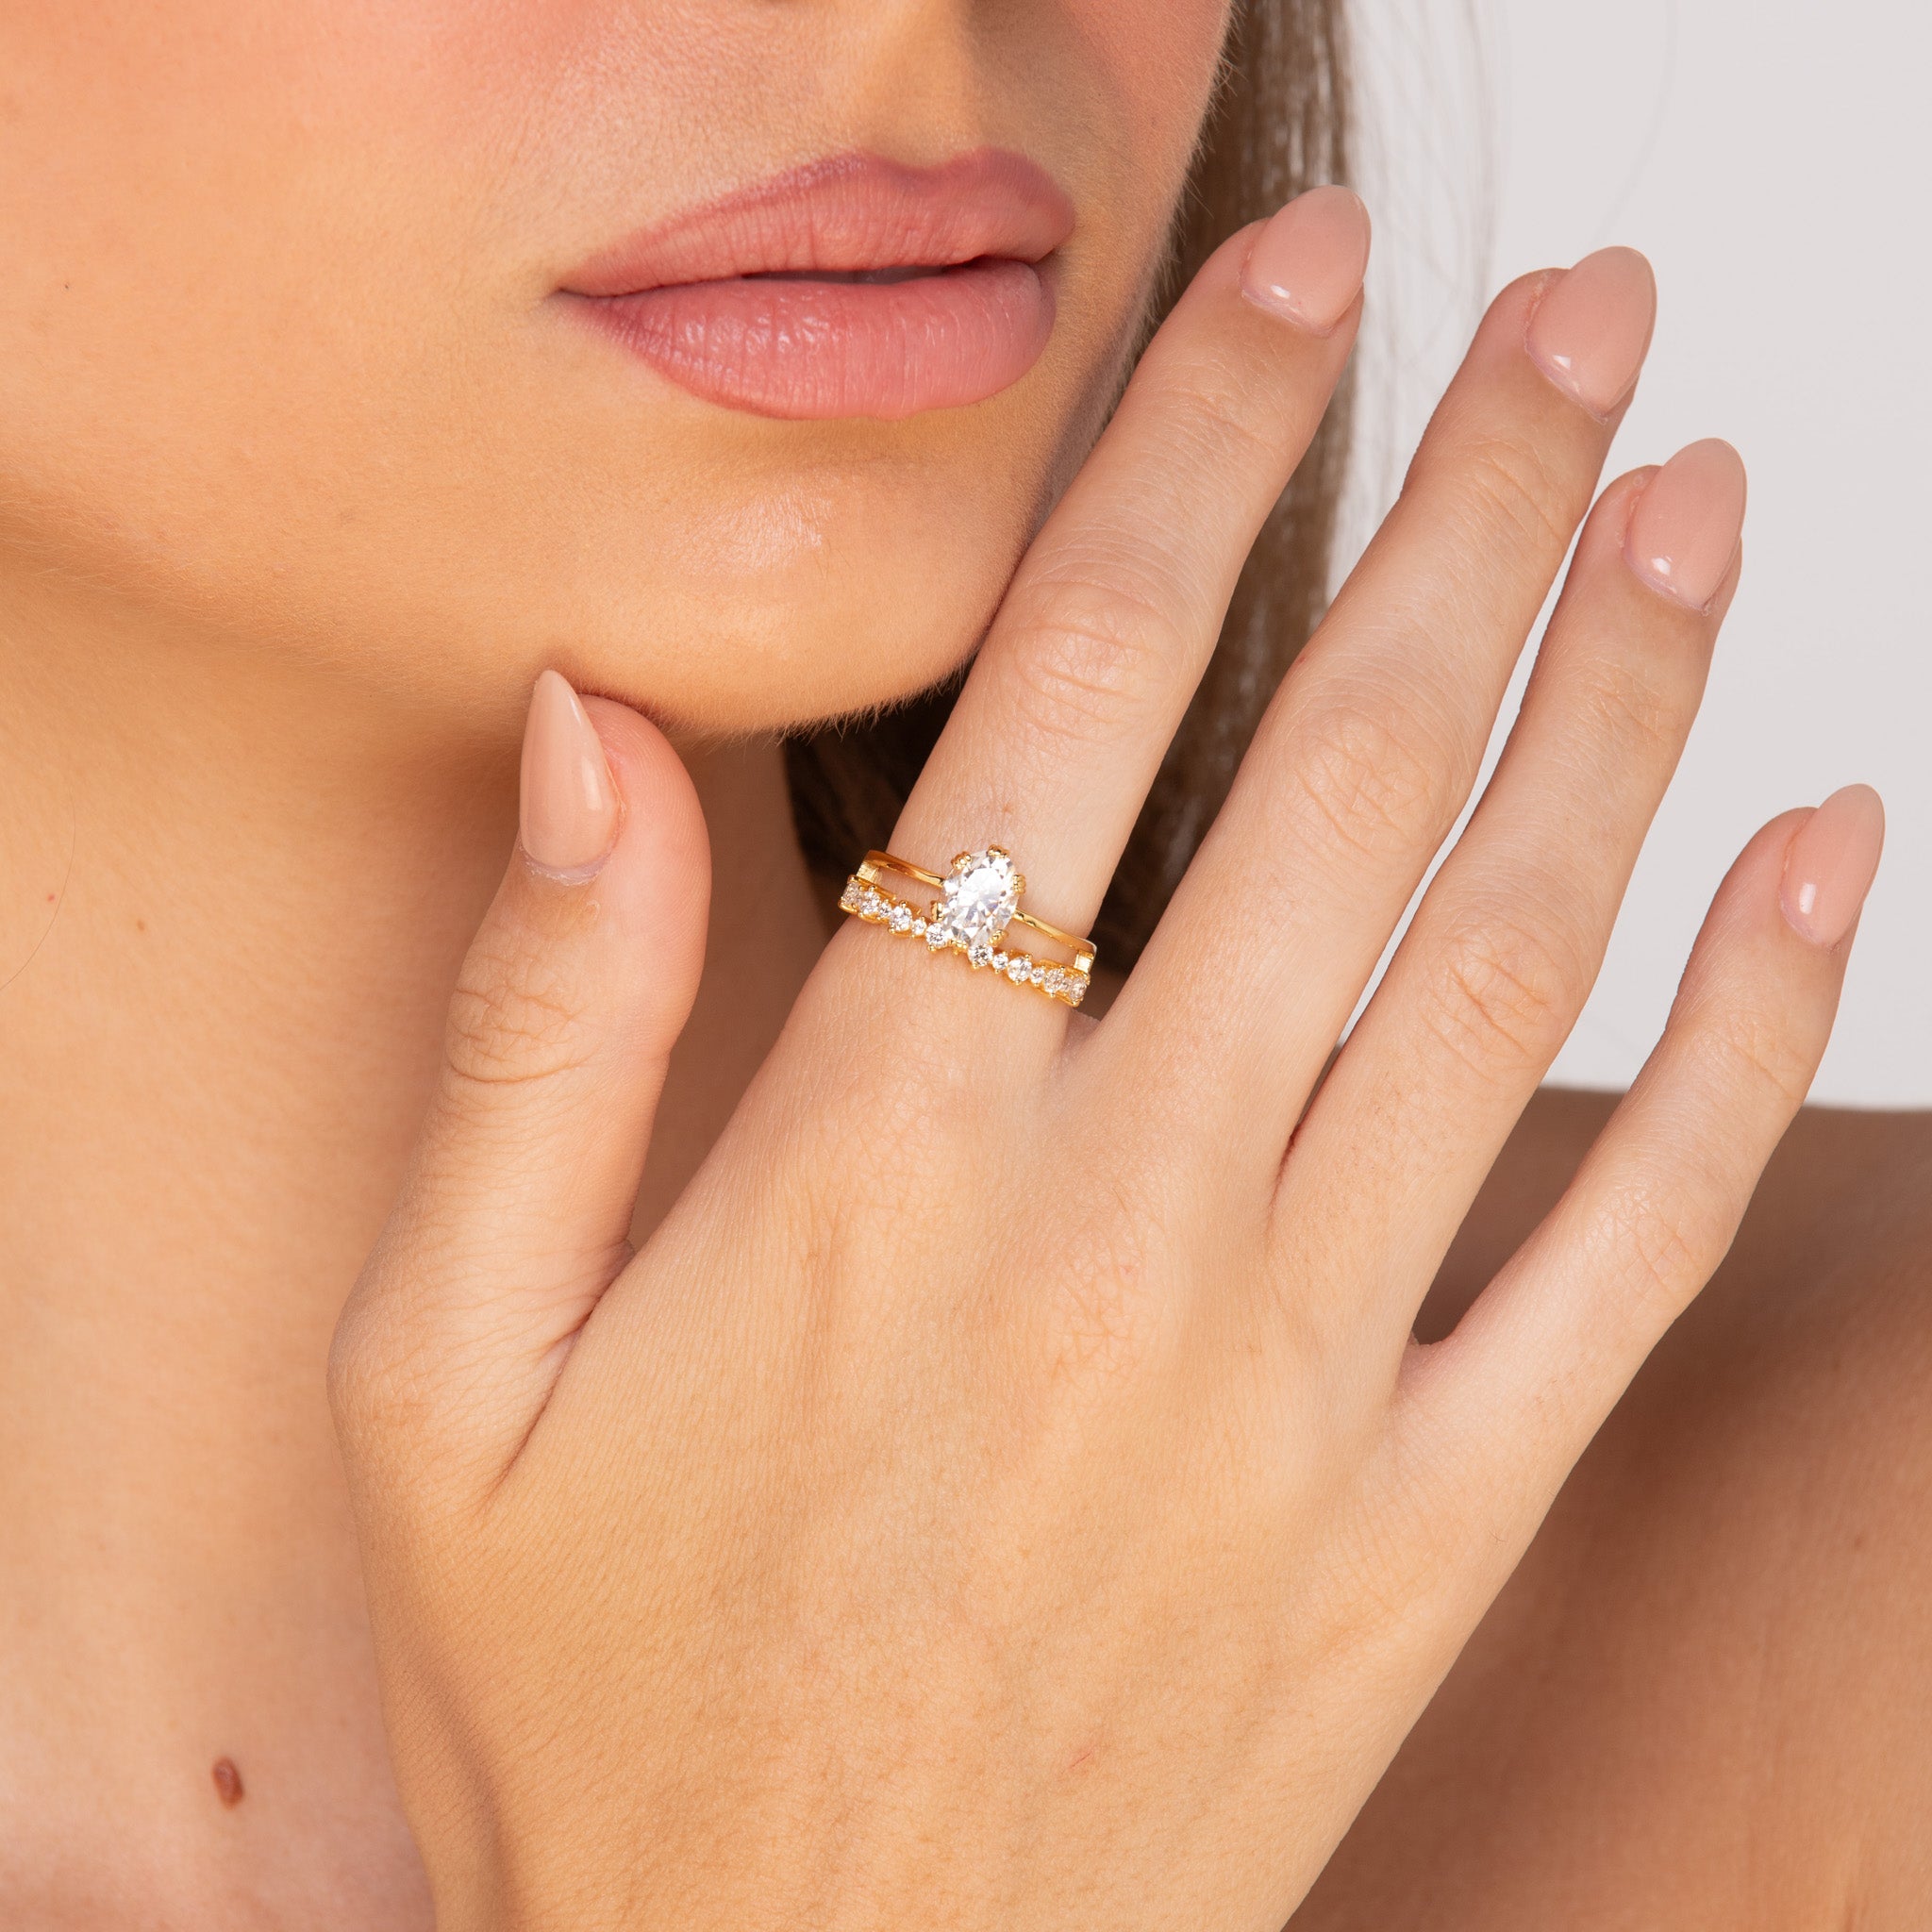 The Madison - 1.5 crt Moissanite Diamond Ring